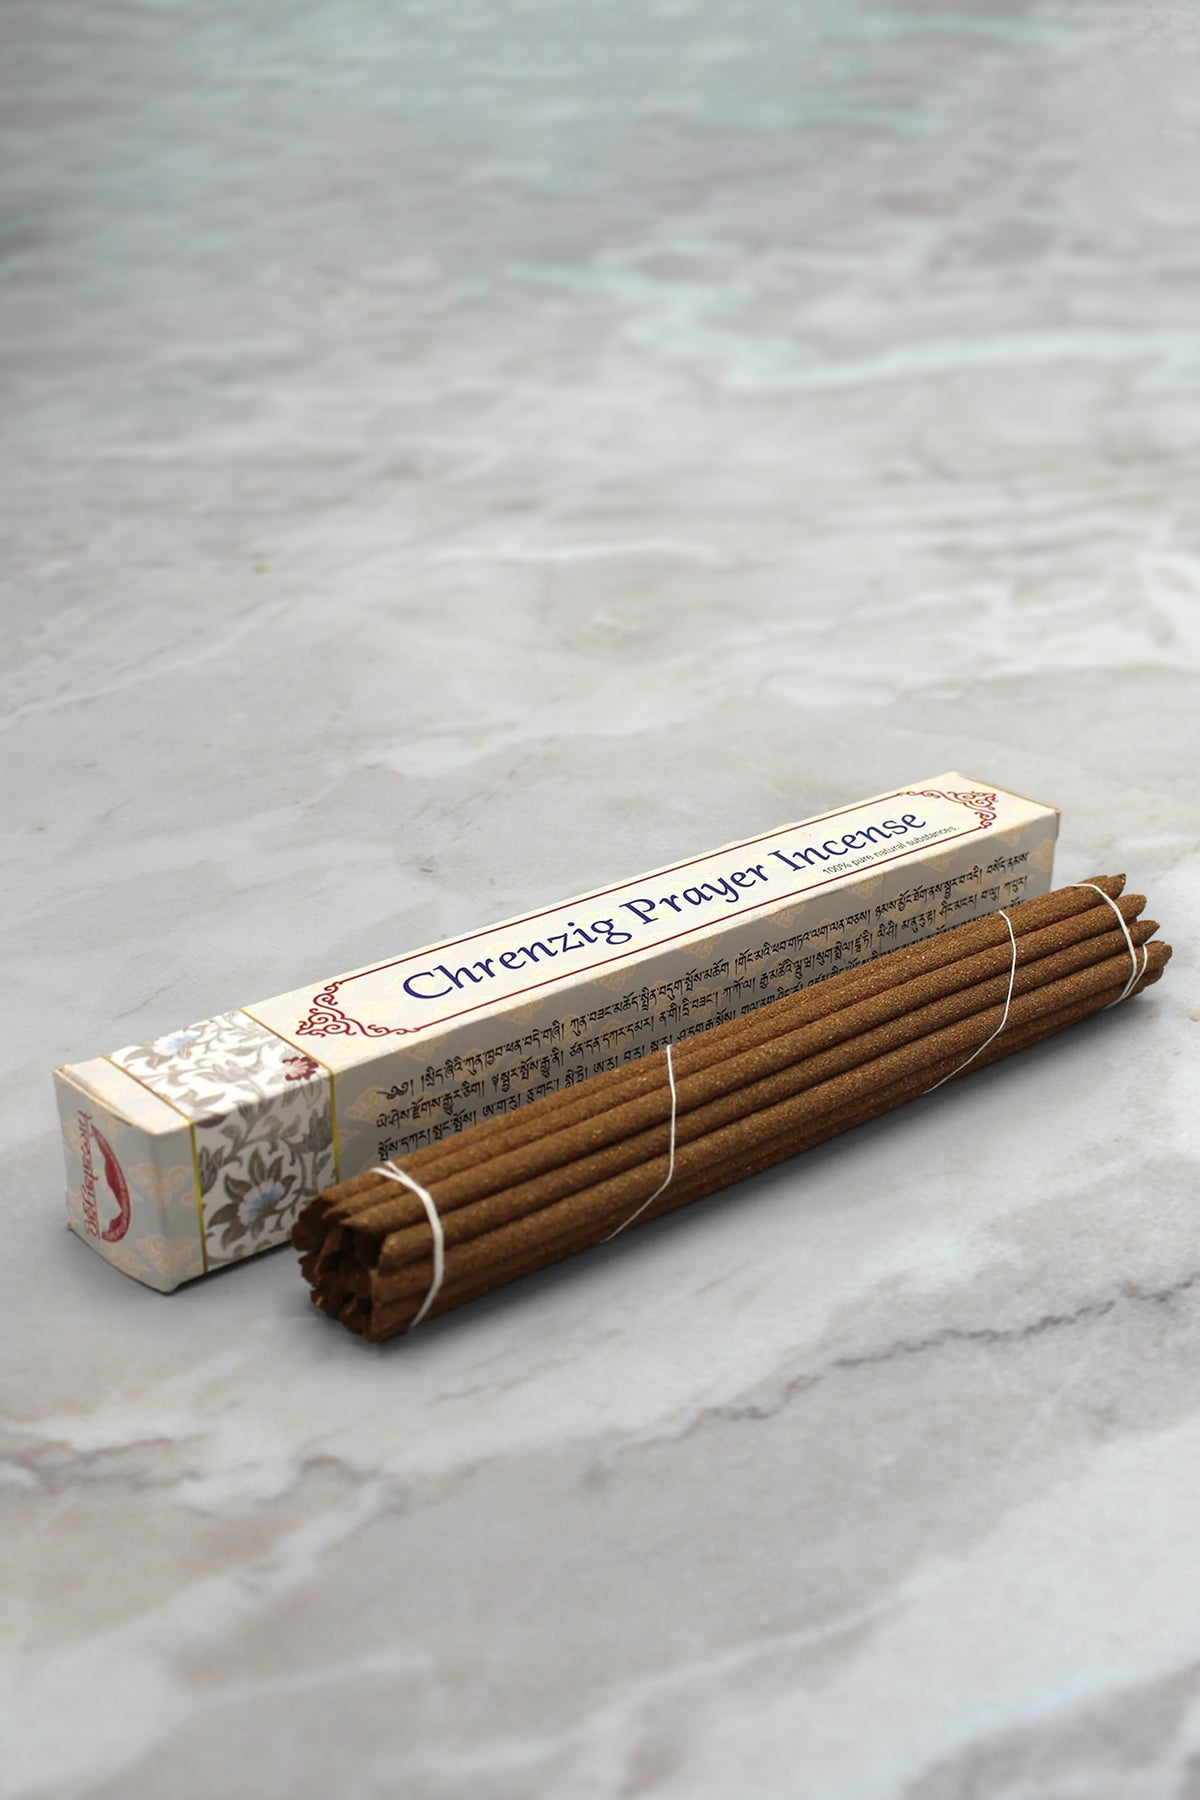 Chenrezig Prayer Incense Sticks